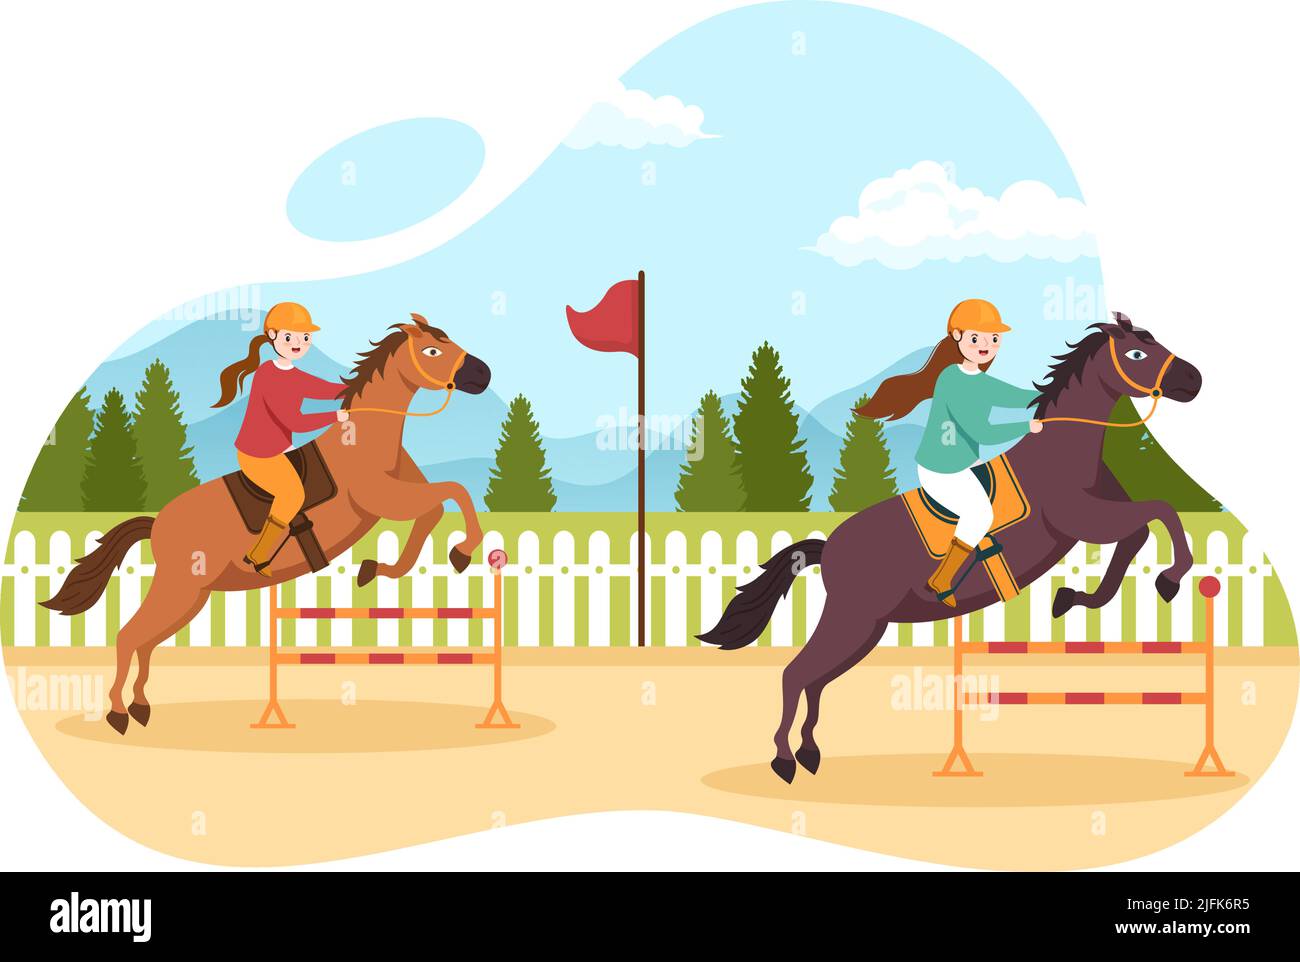 Dessin de la course de chevaux Illustration avec des personnages personnes faisant des championnats de compétition ou des sports équestres dans l'hippodrome Illustration de Vecteur